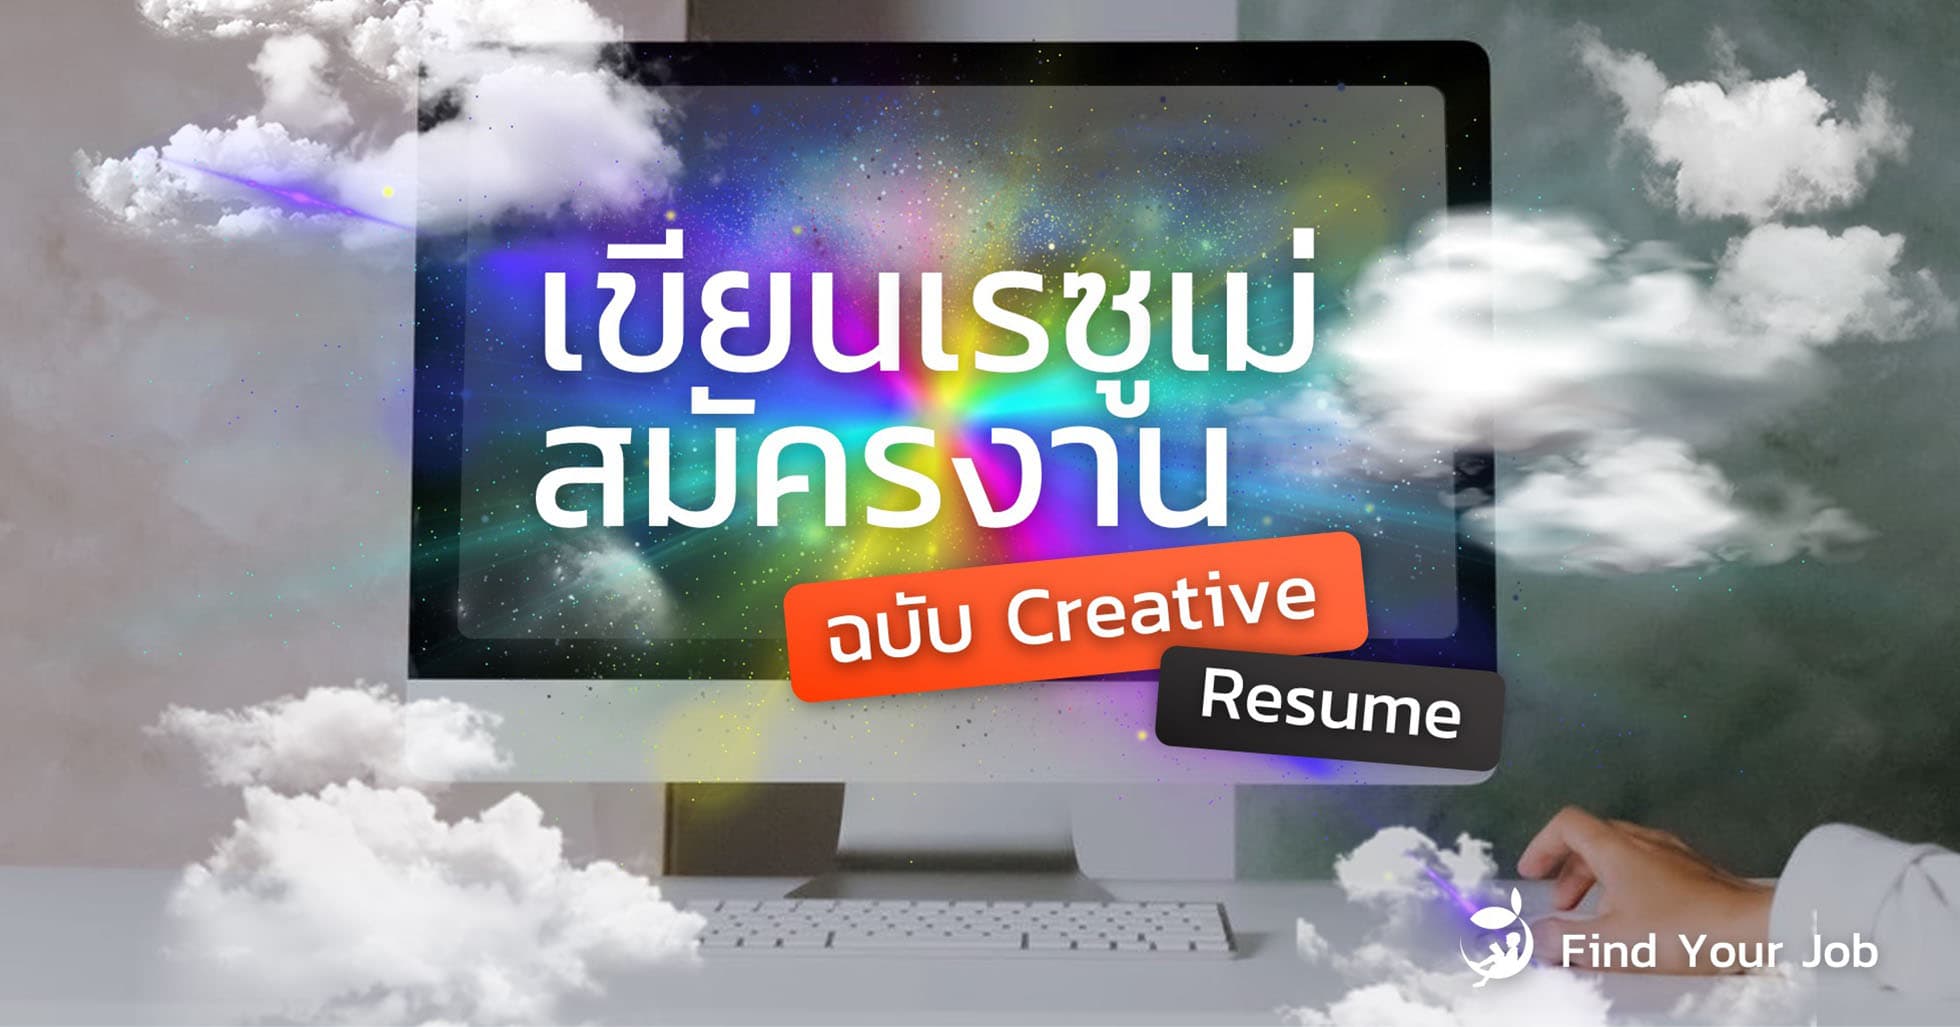 วิธีเขียนเรซูเม่สมัครงาน ฉบับ Creative Resume